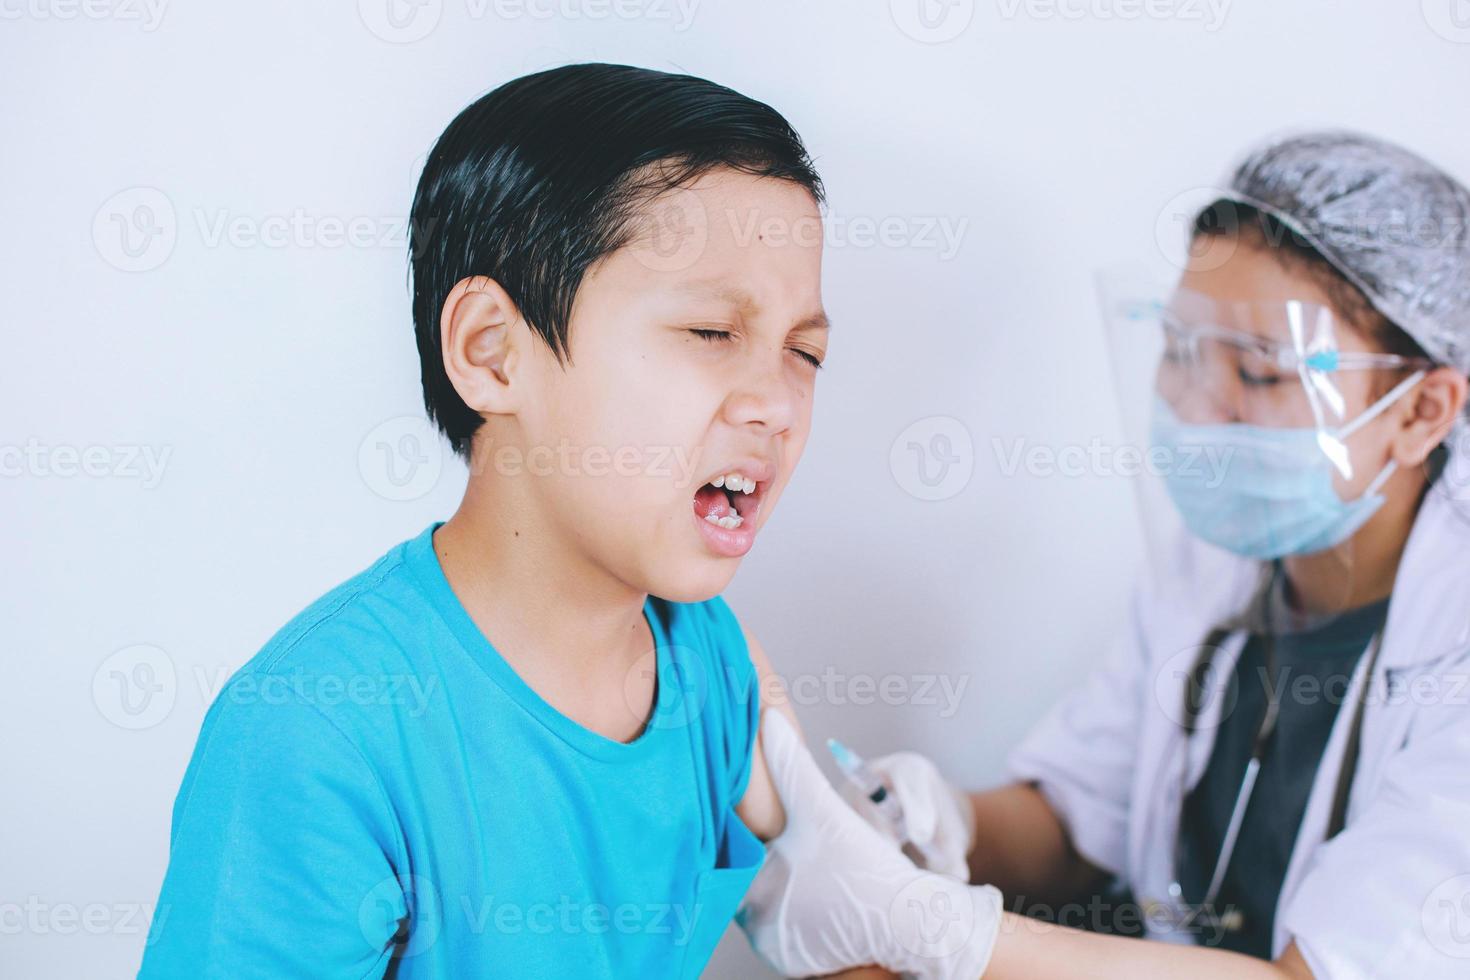 garçon patient avec expression de douleur lors de l'injection de vaccin, phobie des injections. concept de médecine, de vaccination, d'immunisation et de soins de santé photo